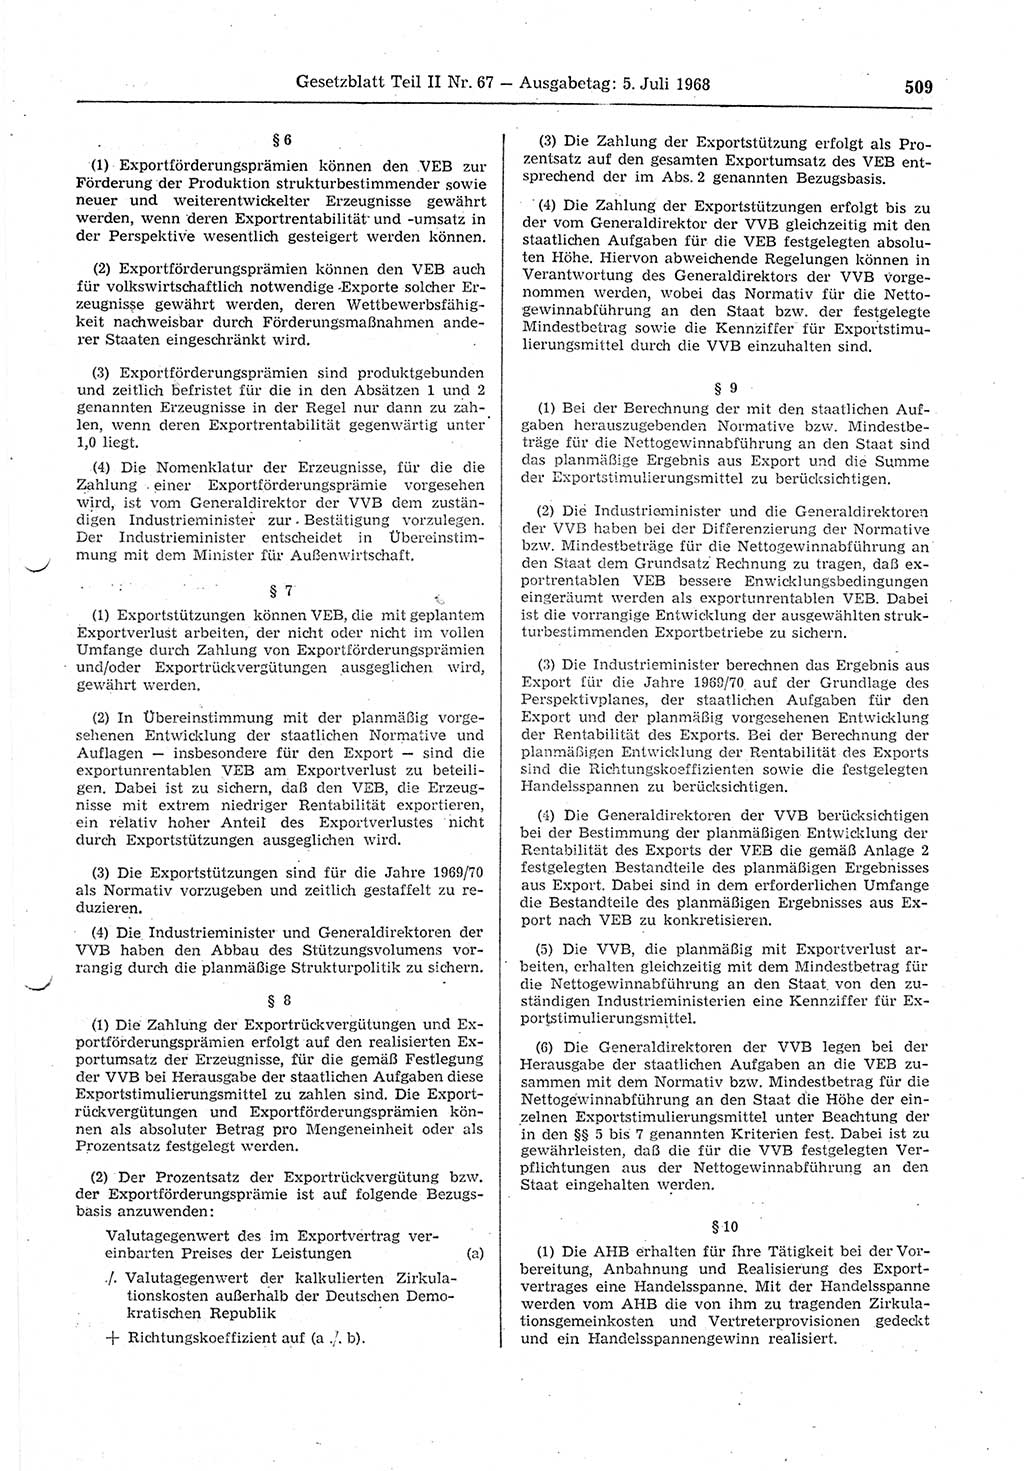 Gesetzblatt (GBl.) der Deutschen Demokratischen Republik (DDR) Teil ⅠⅠ 1968, Seite 509 (GBl. DDR ⅠⅠ 1968, S. 509)